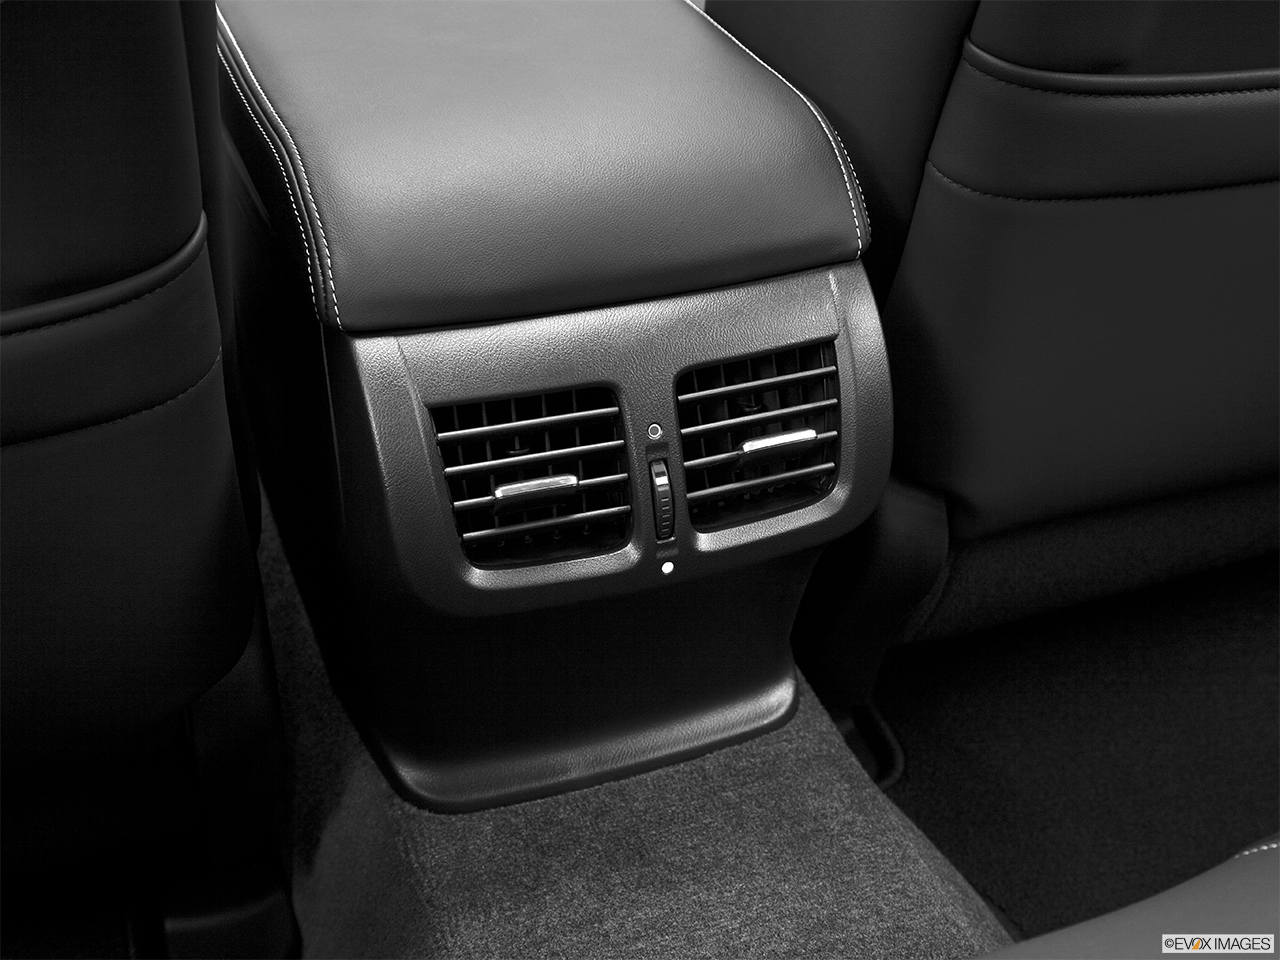 2013 Acura TL SH-AWD Rear A/C controls. 